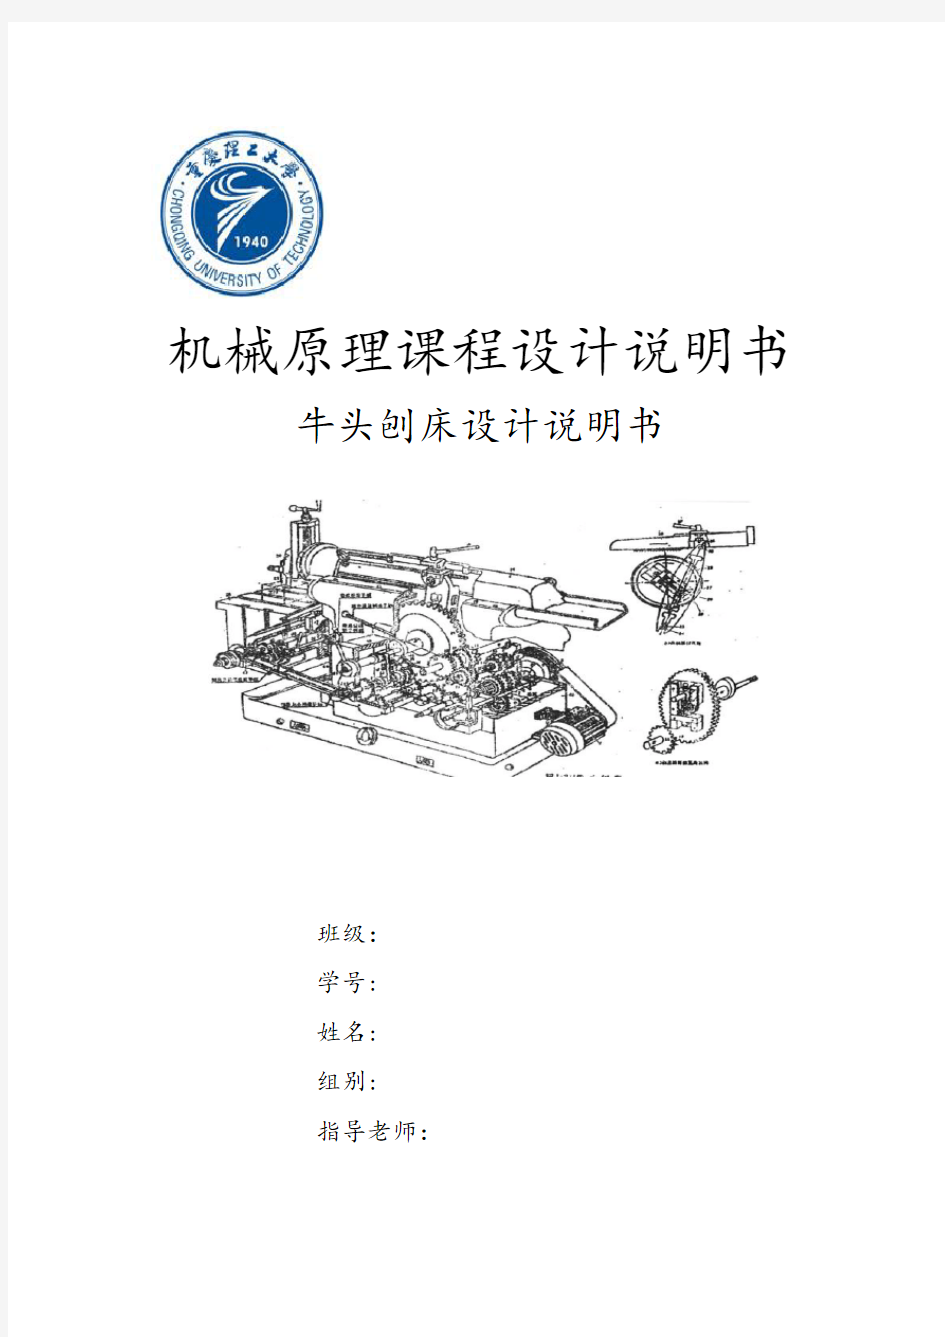 重庆理工大学机械原理课程设计说明书牛头刨床设计说明书2013